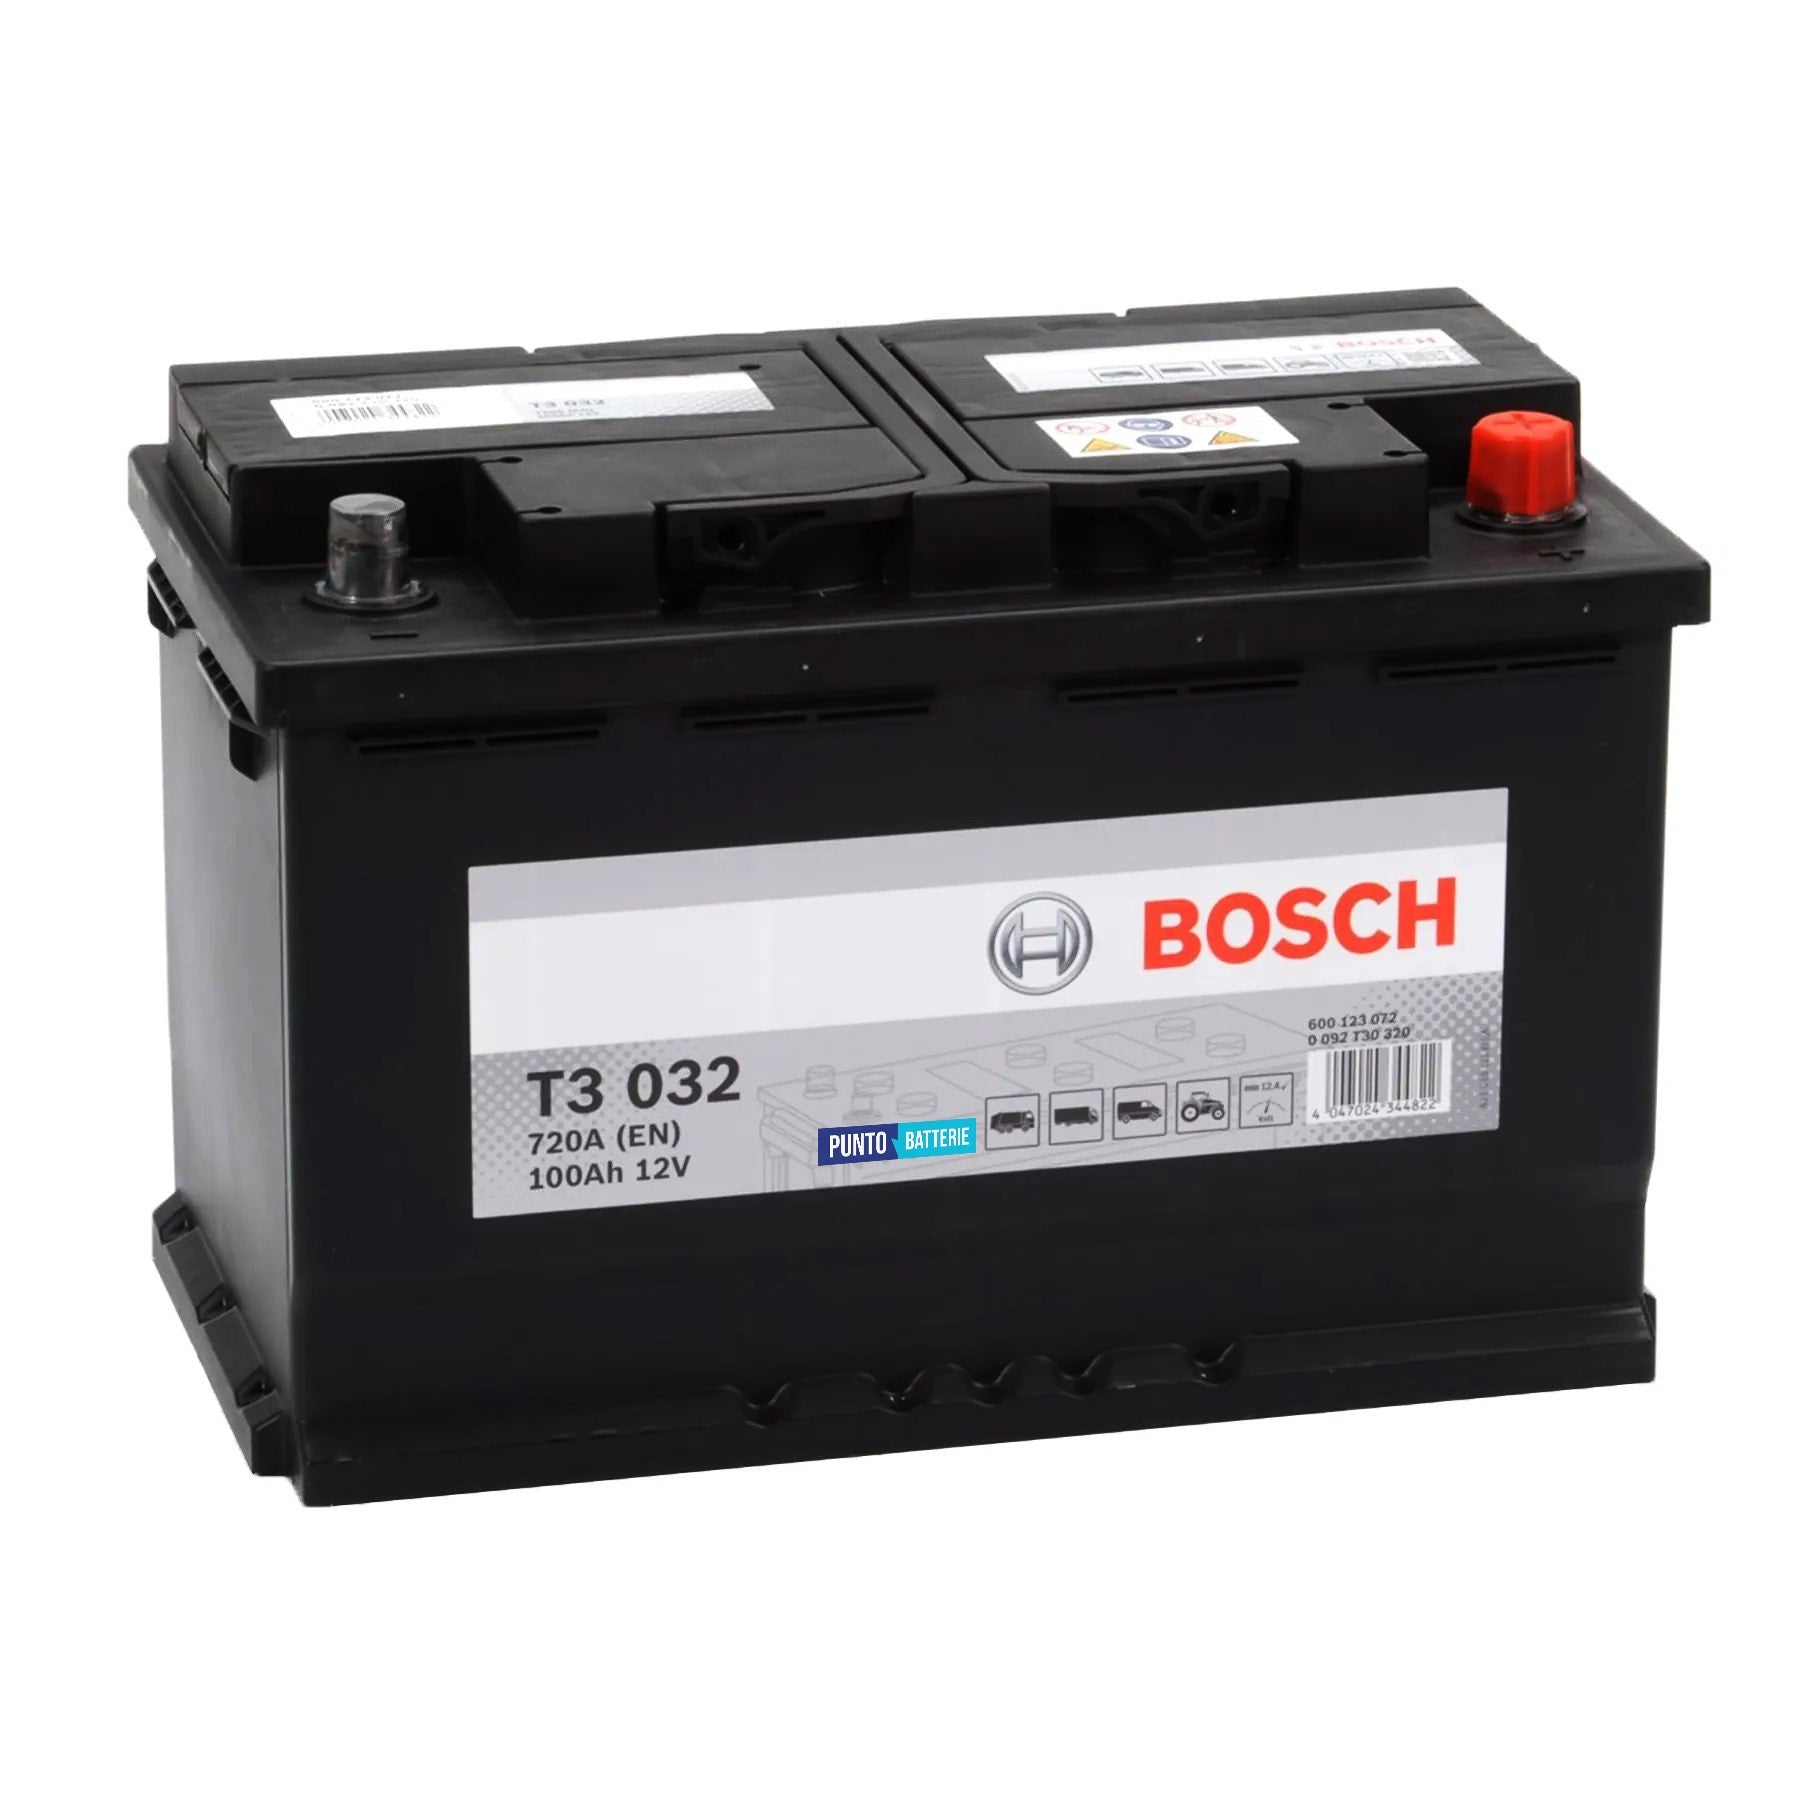 Batteria originale Bosch T3 T3032, dimensioni 315 x 175 x 210, polo positivo a destra, 12 volt, 100 amperora, 720 ampere. Batteria per camion e veicoli pesanti.